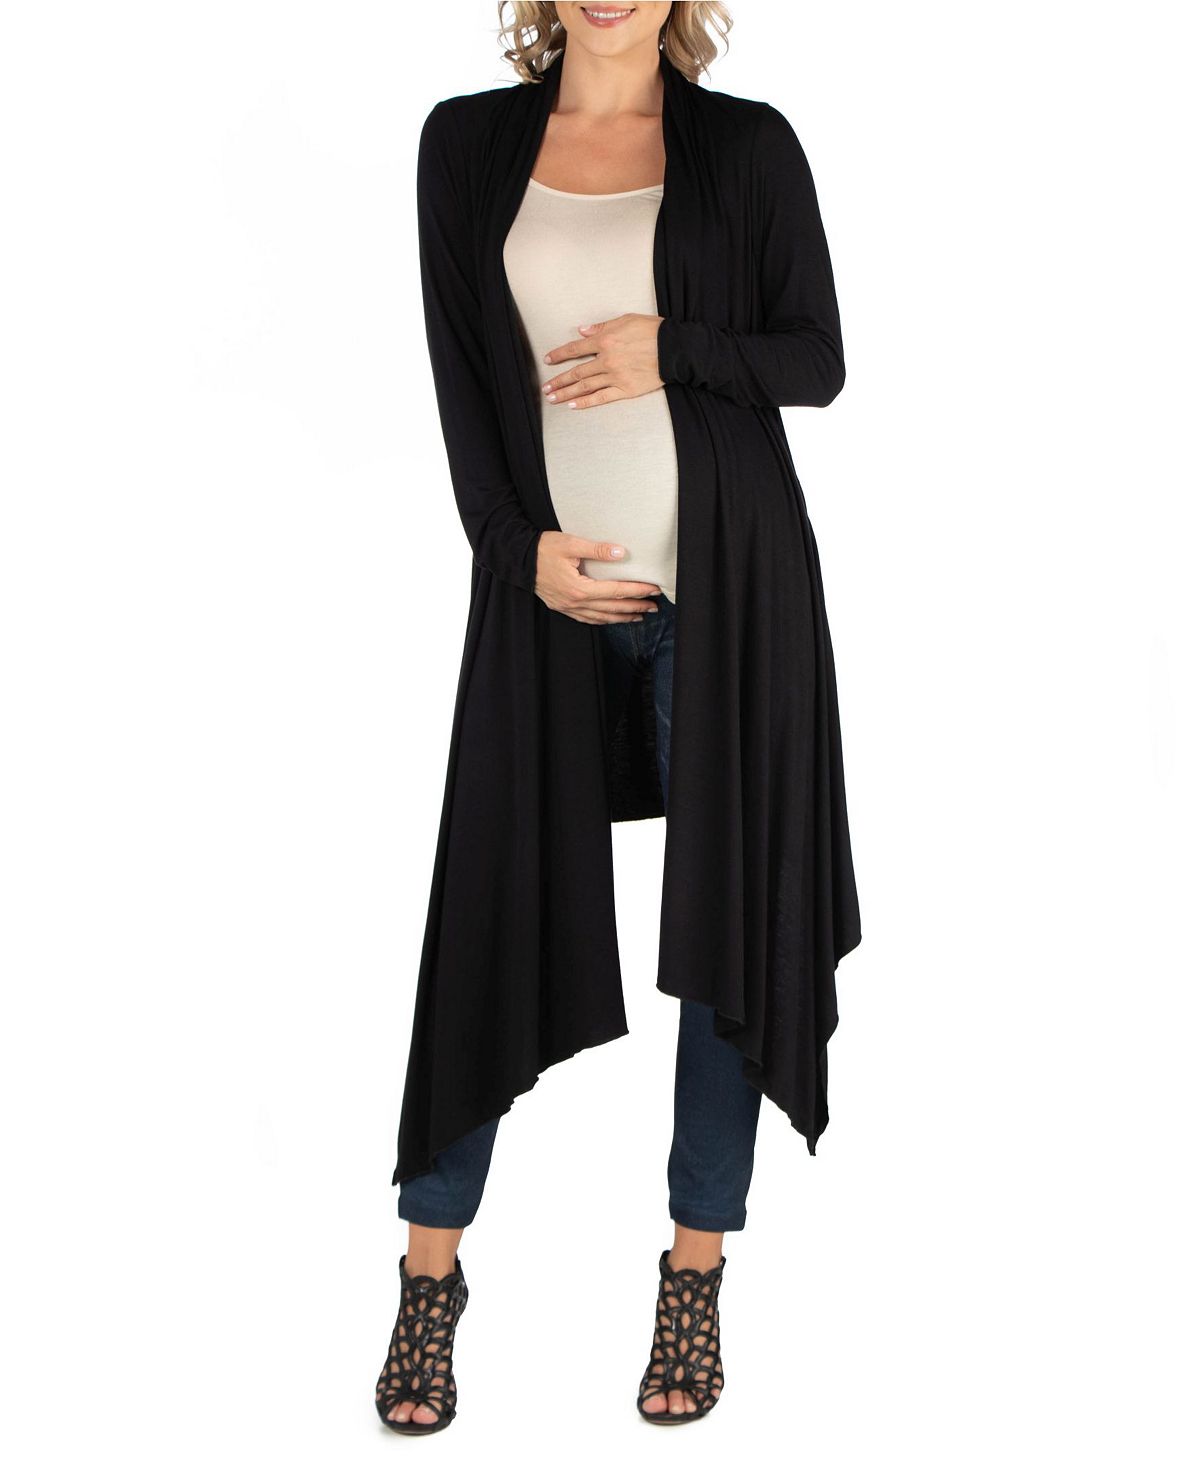 Открытый кардиган для беременных длиной до колена с длинными рукавами 24seven Comfort Apparel, черный